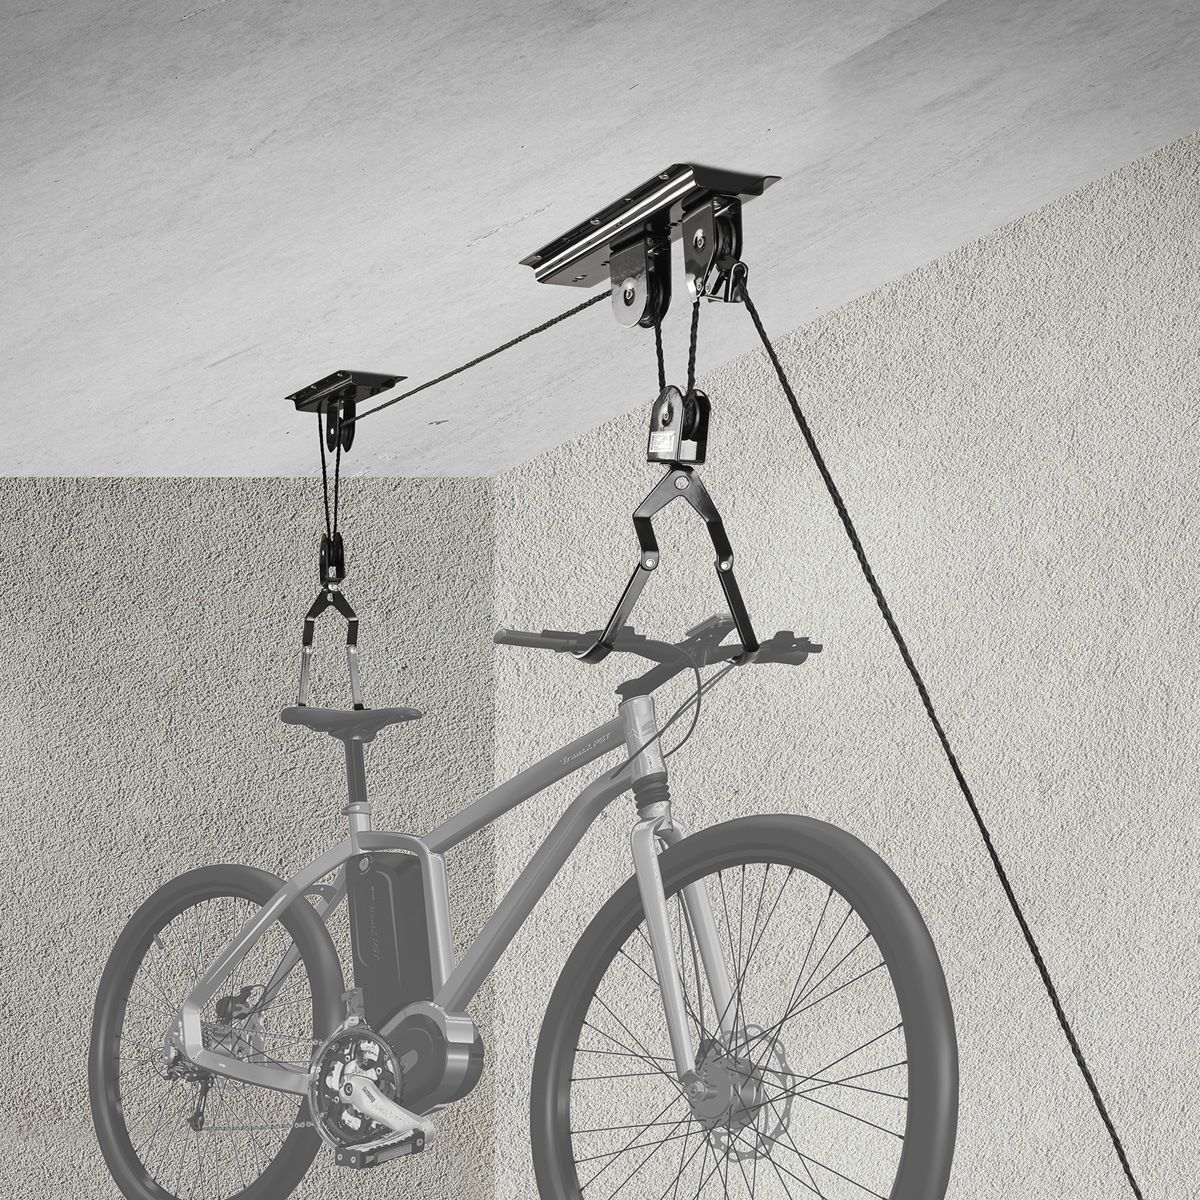 Fixation Range vélo au plafond